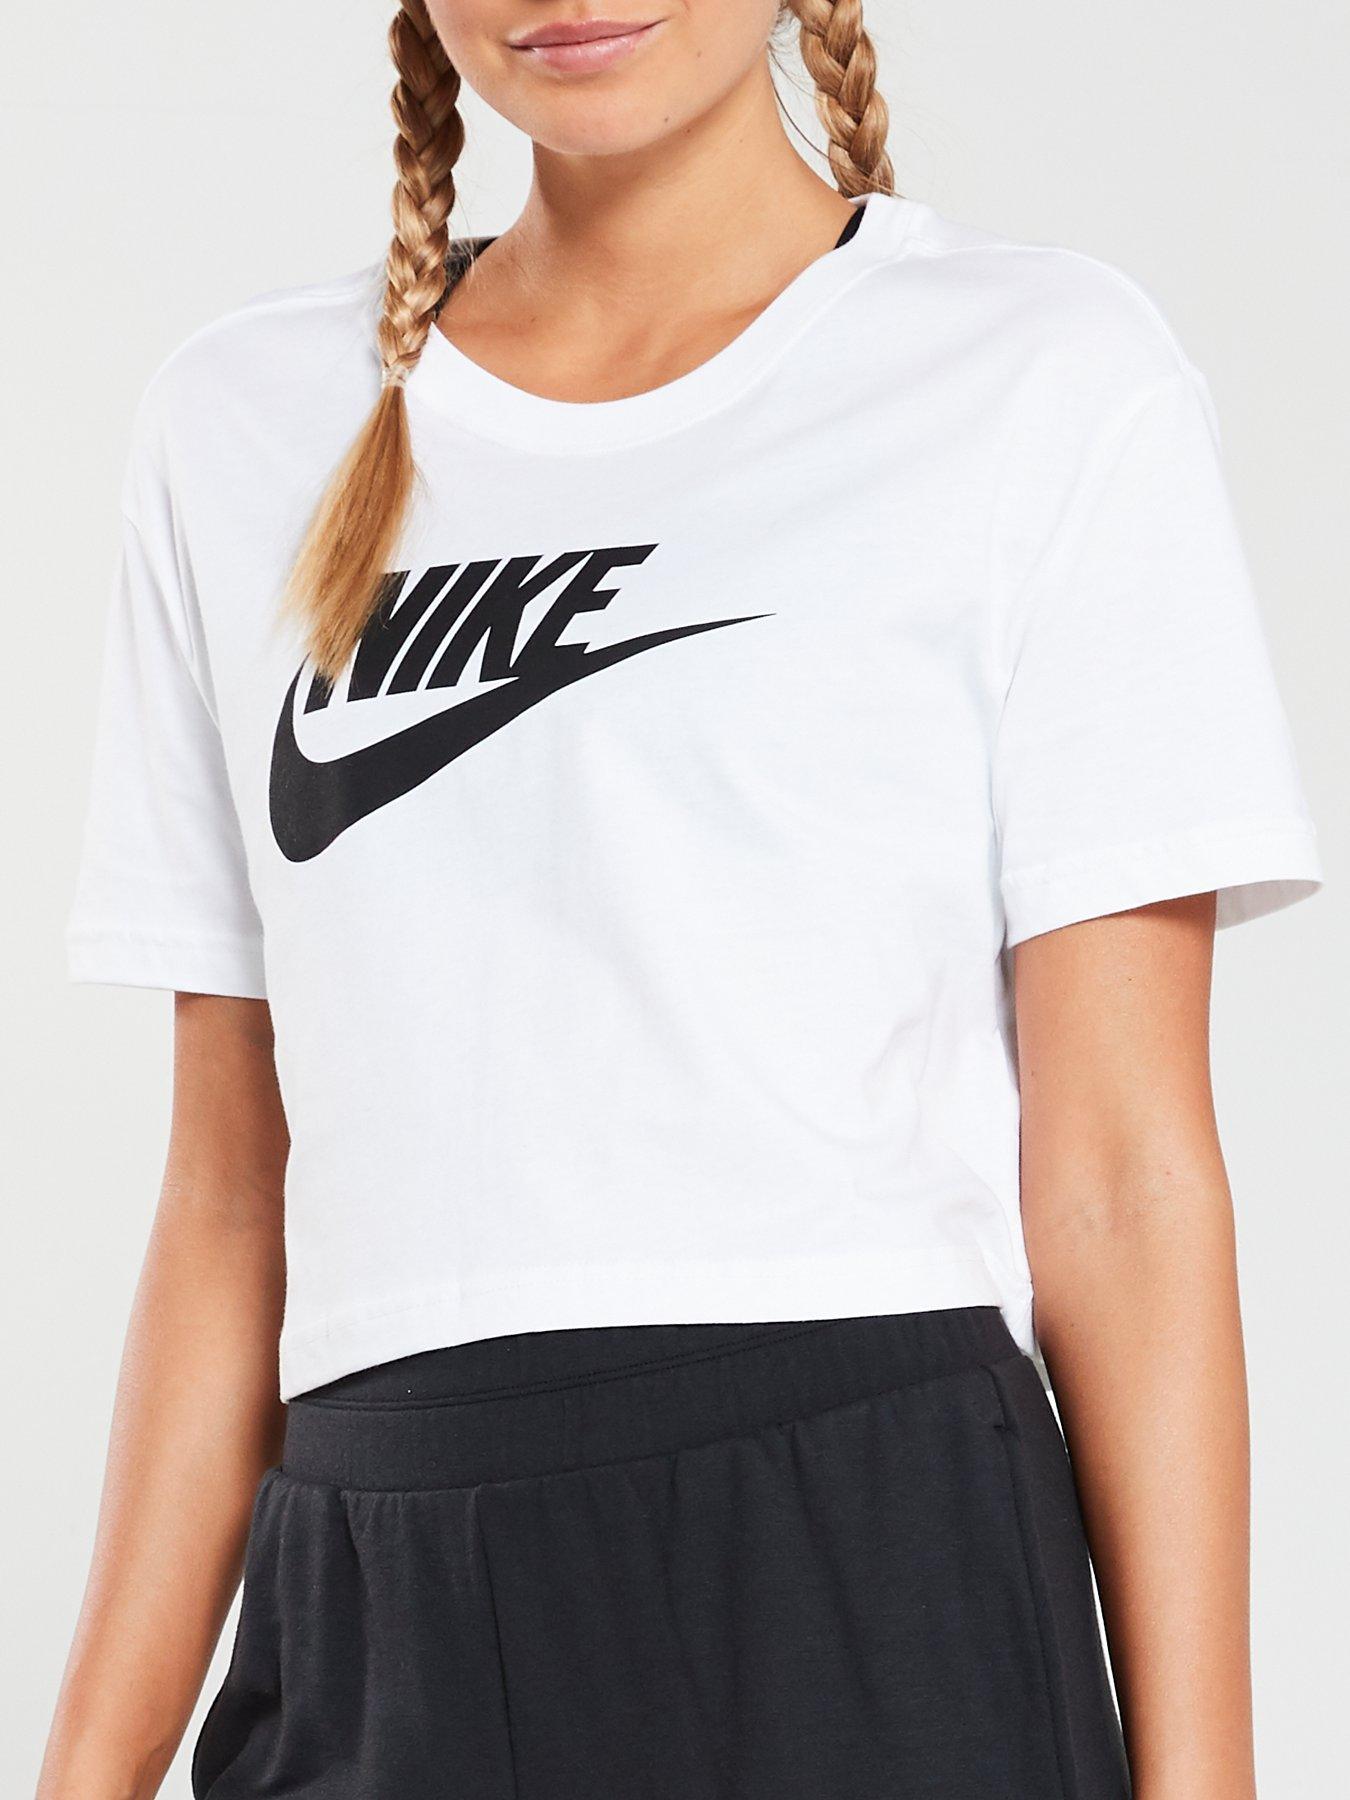 Tops & t-shirts, Women, Nike